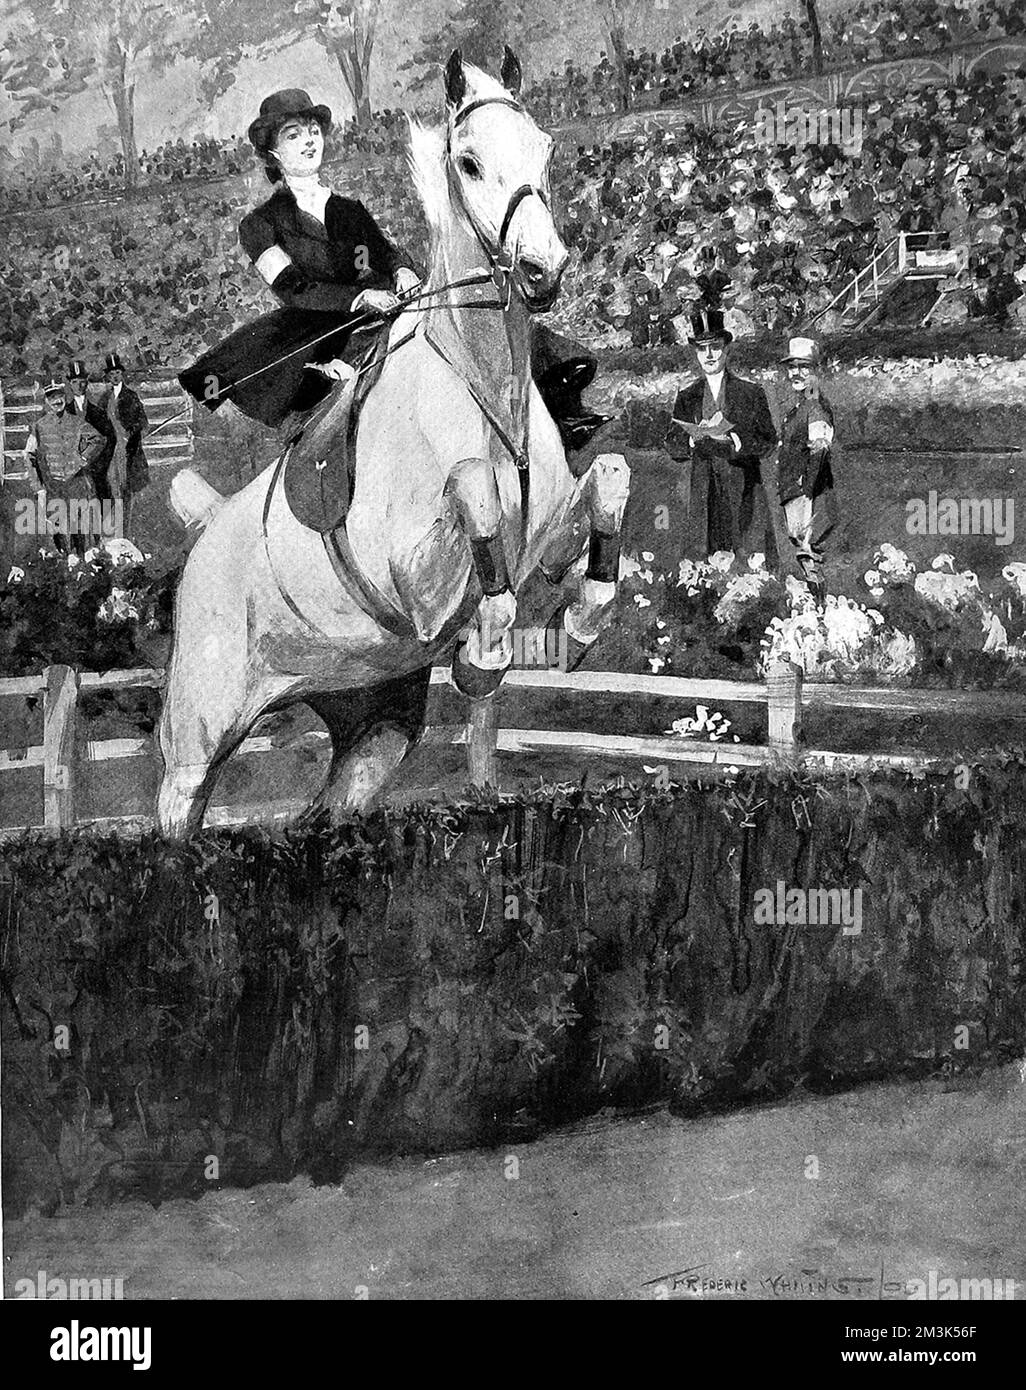 Illustrazione che mostra una concorrente femminile che prende il salto "parc a moutons" all'International Horse Show di Olympia. Data: 1908 Foto Stock